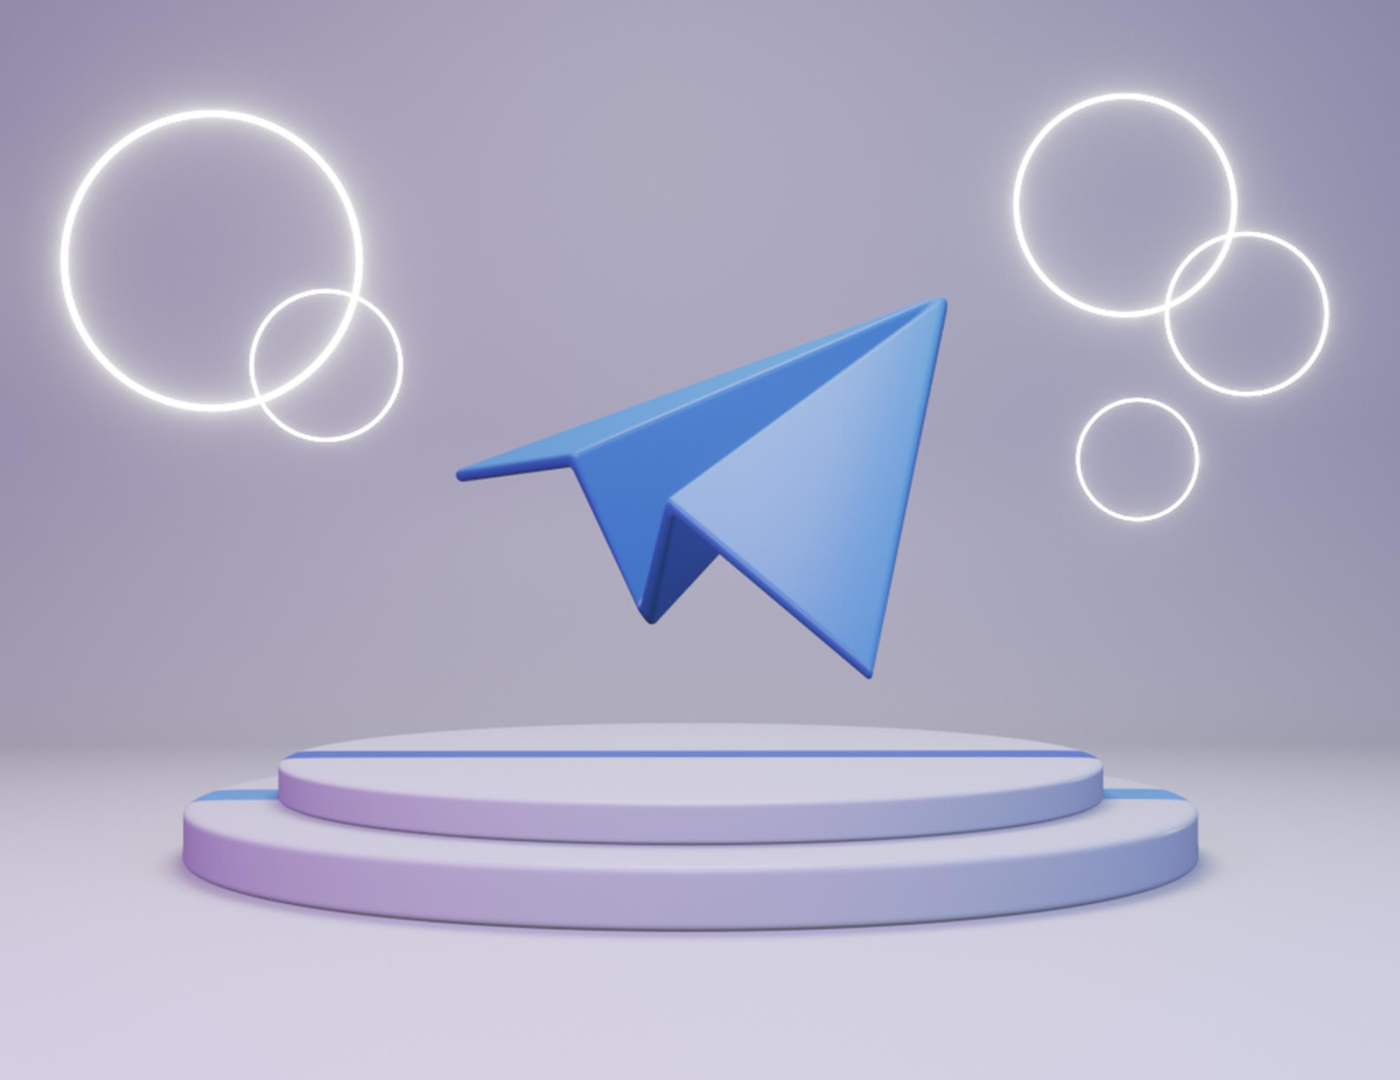 Cara melakukan registrasi massal di Telegram